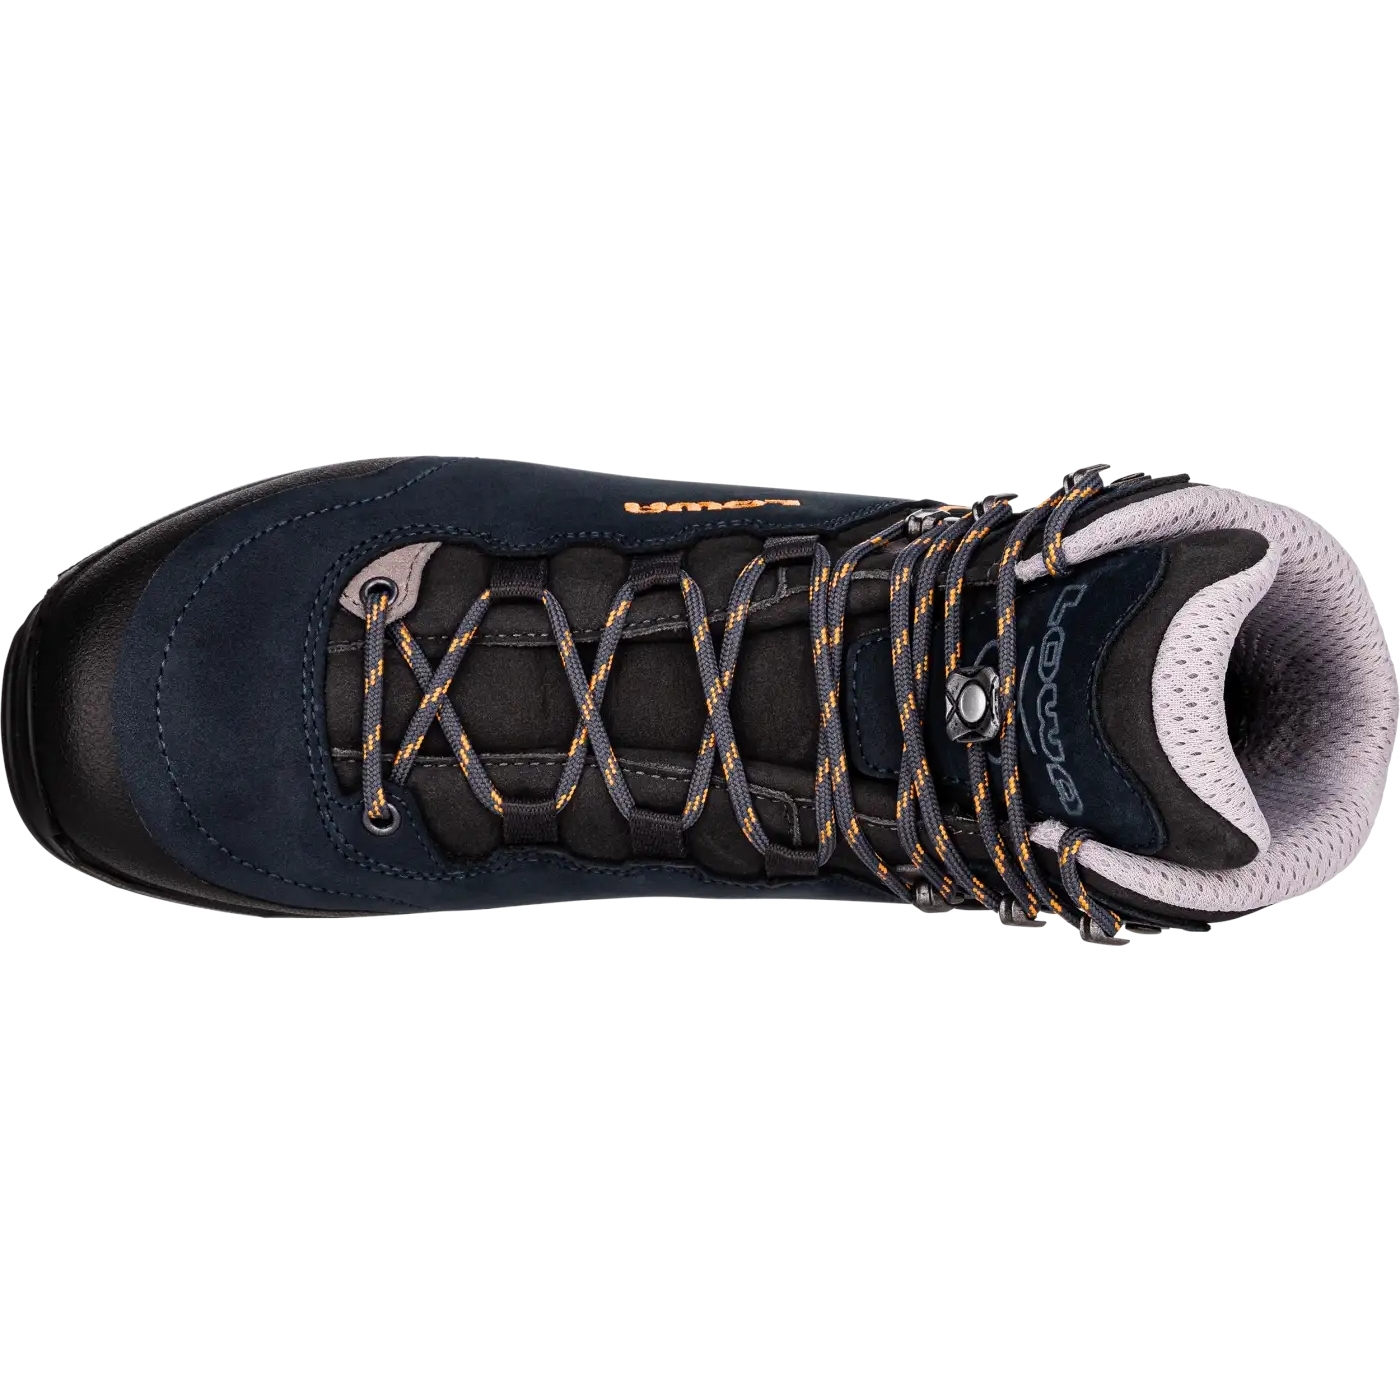 Classificeren Heer duisternis LOWA Lady Light GTX Women's Trekking Shoes - slate/kiwi | BIKE24